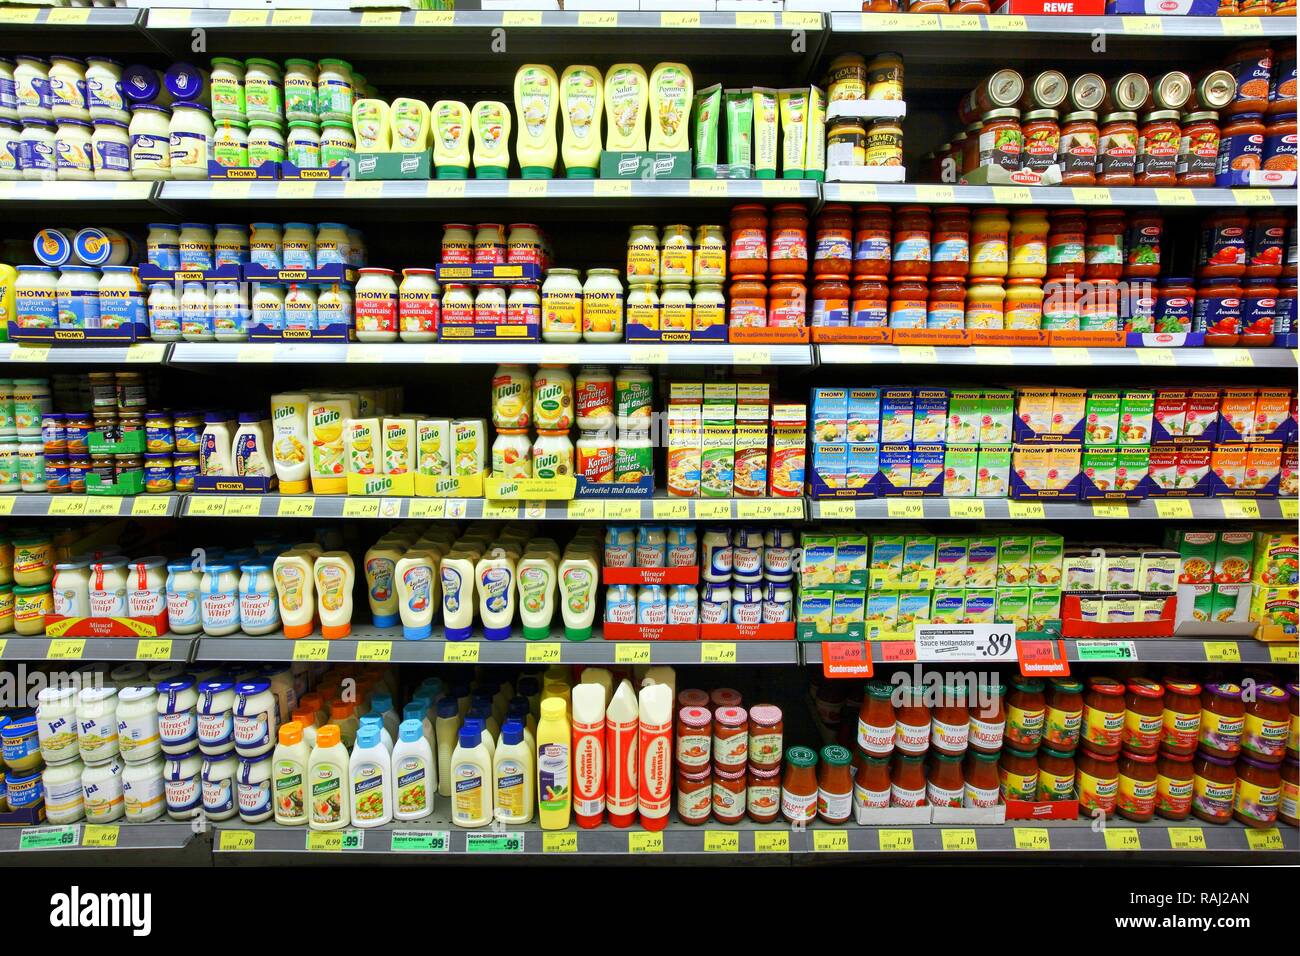 Comidas con mayonesa: Más de 200,472 fotos de stock con licencia